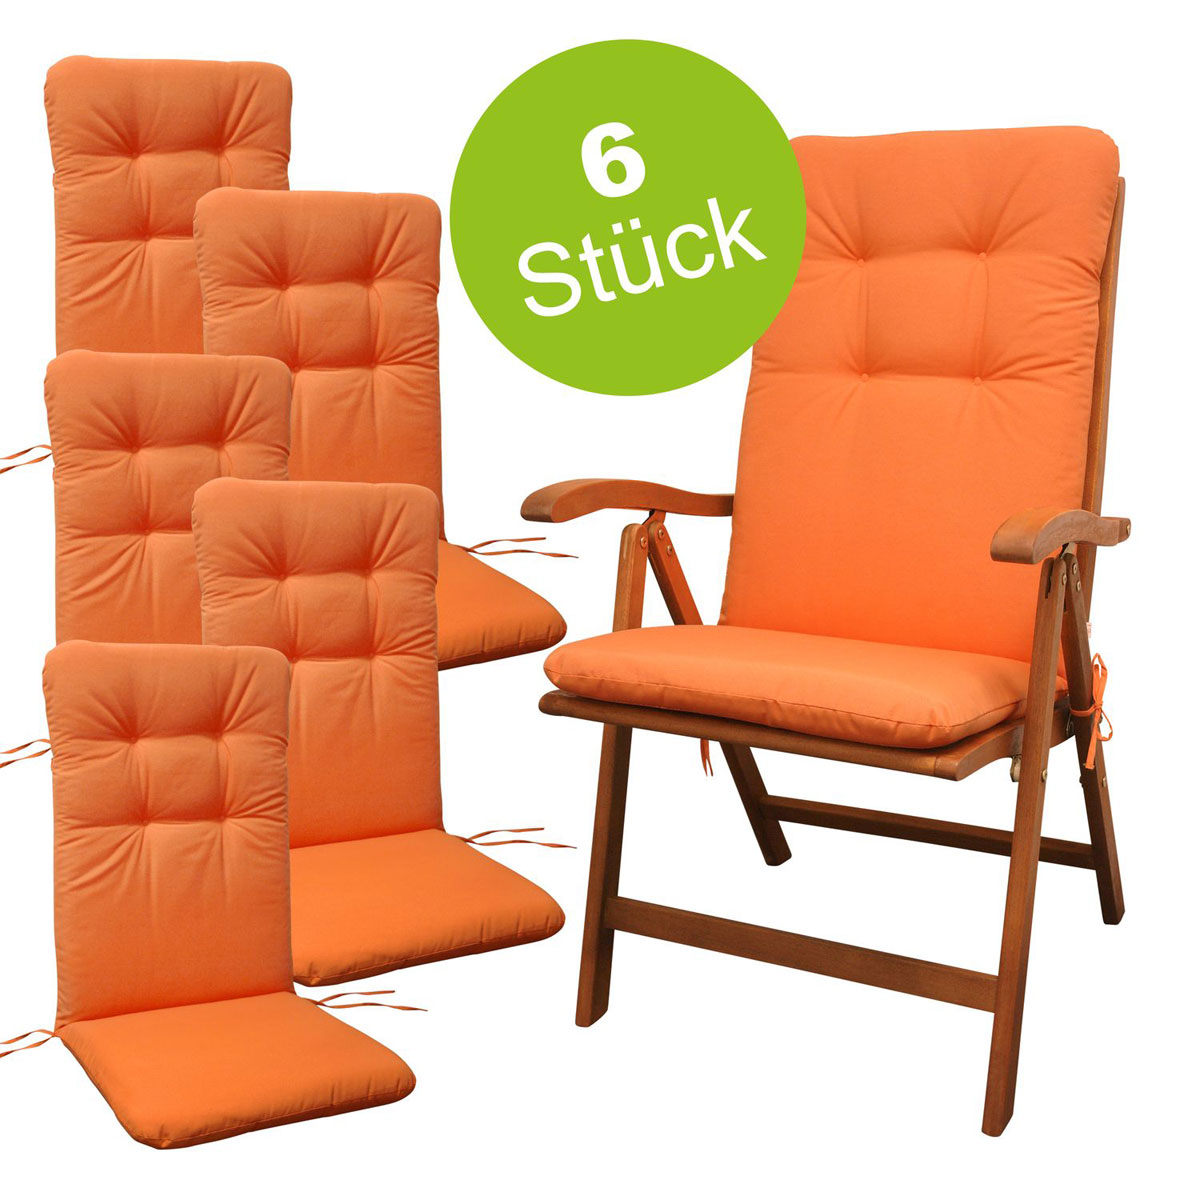 Polsterauflage Indoba Orange 6x 6 | Relax Sitzauflage Hochlehner | Stück K000021843